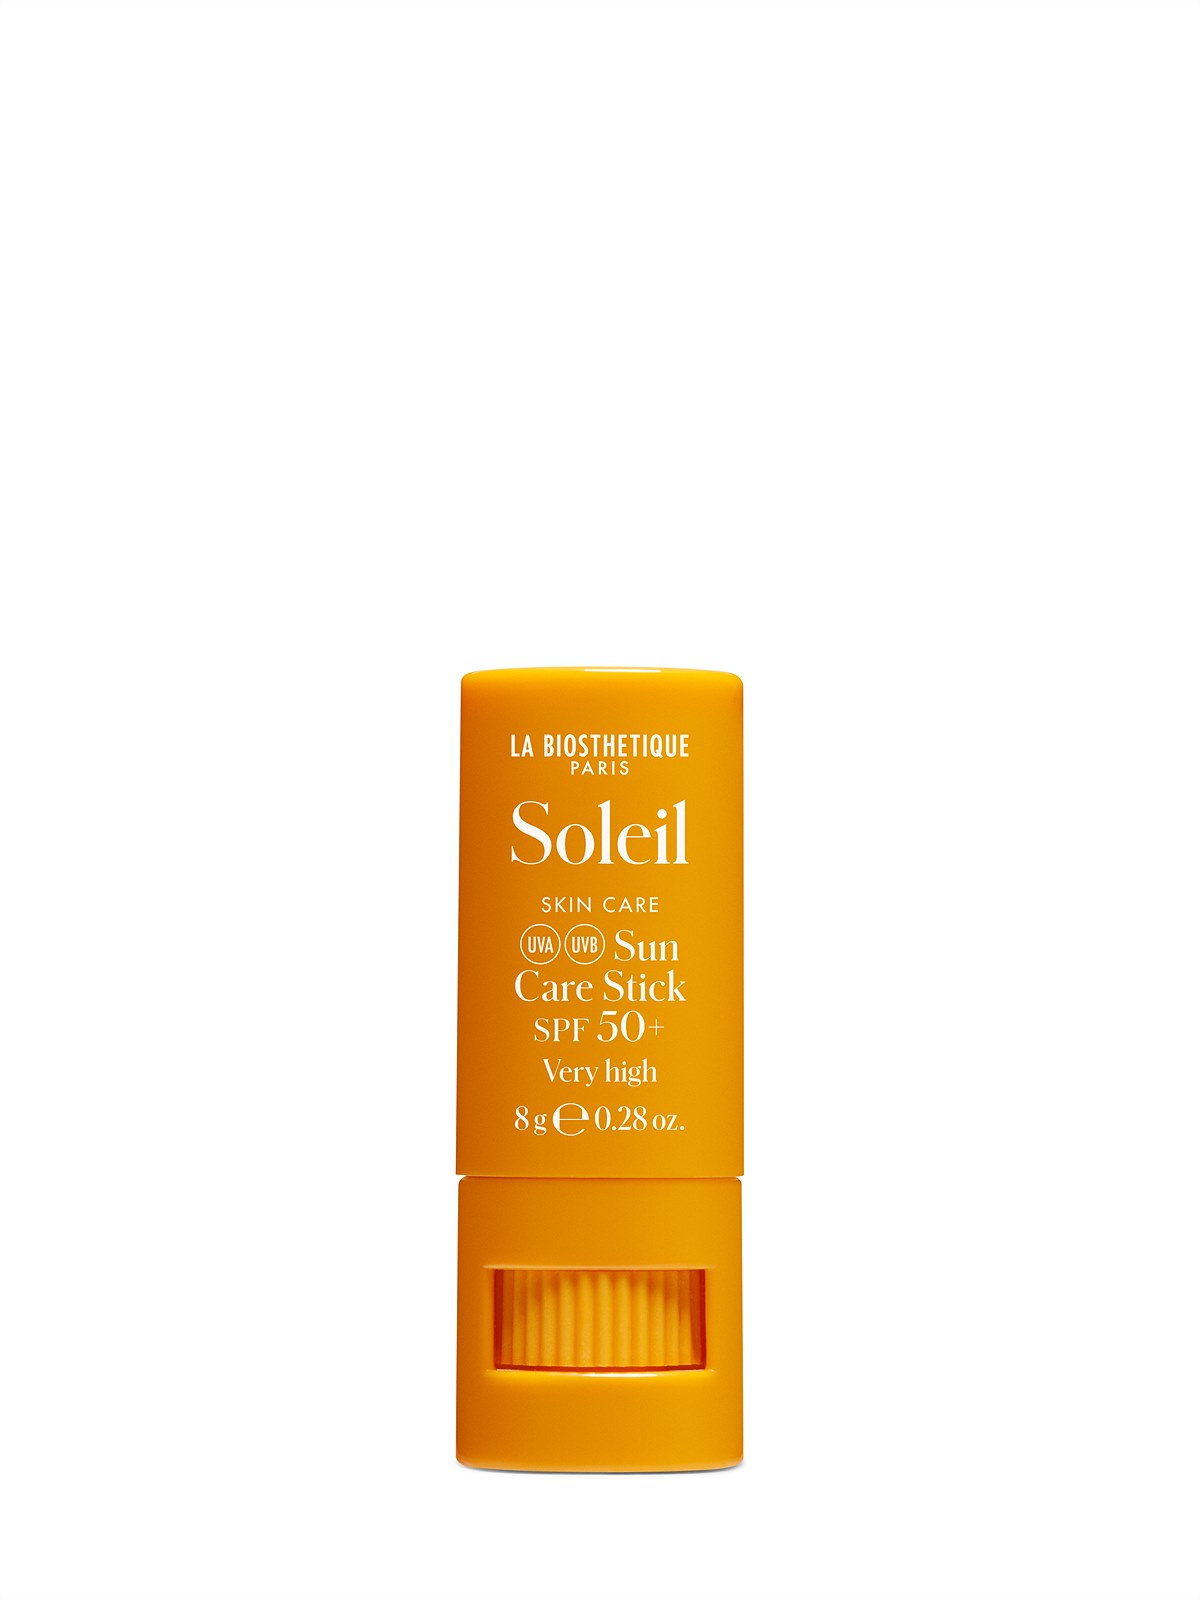 La Biosthétique_Skin-Soleil-Sun-Care-Stick-SPF50-8g_EUR 23,00